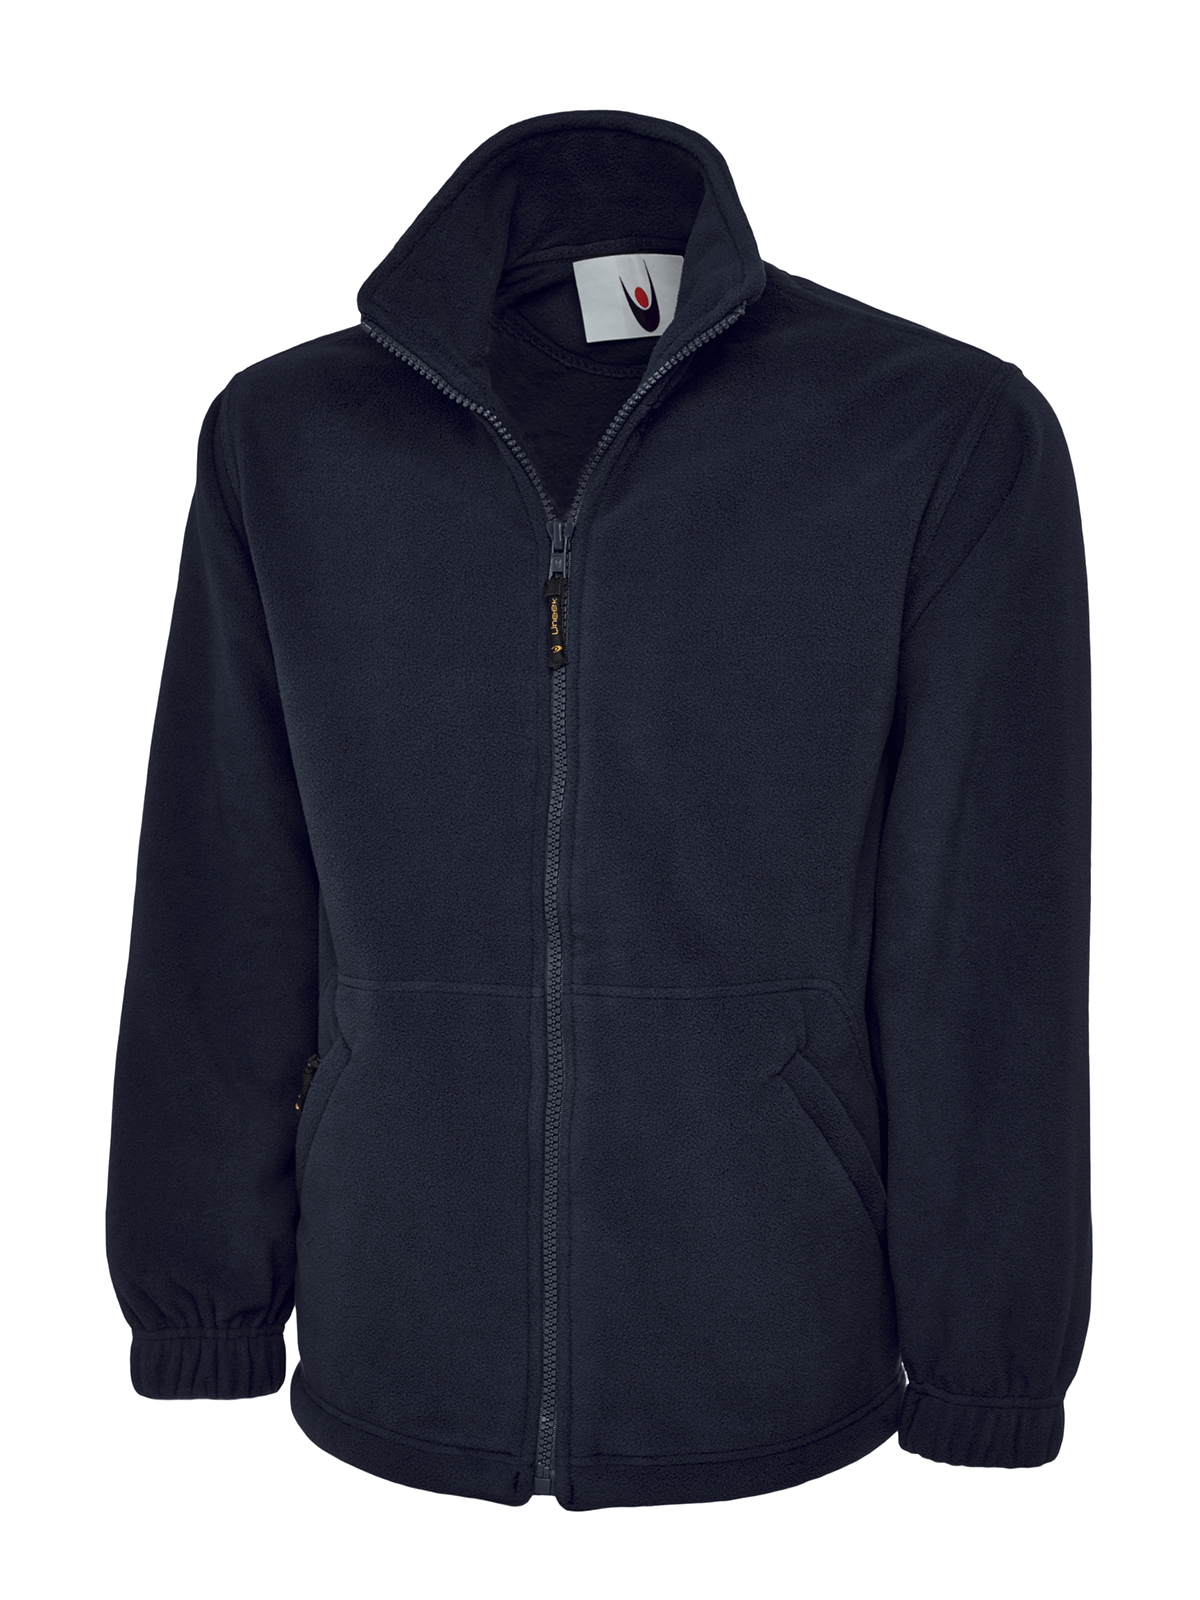 Full Zip Fleece Jacket, Navy - Size 2XL